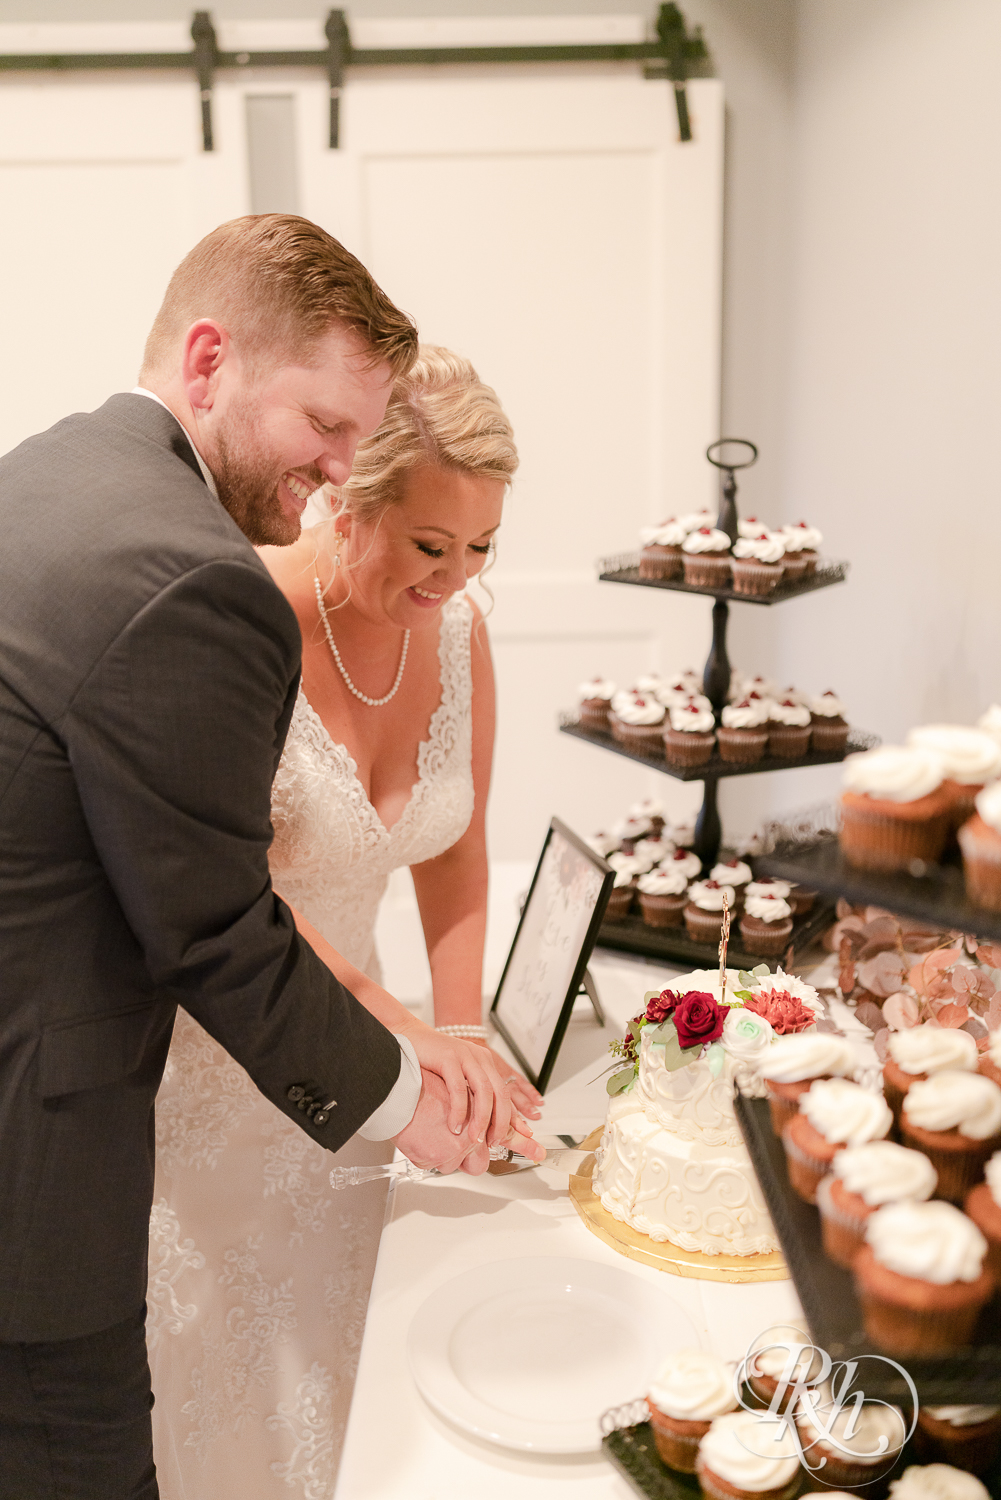 Bride and groom cut wedding cake at Hastings Golf Club in Hastings, Minnesota.